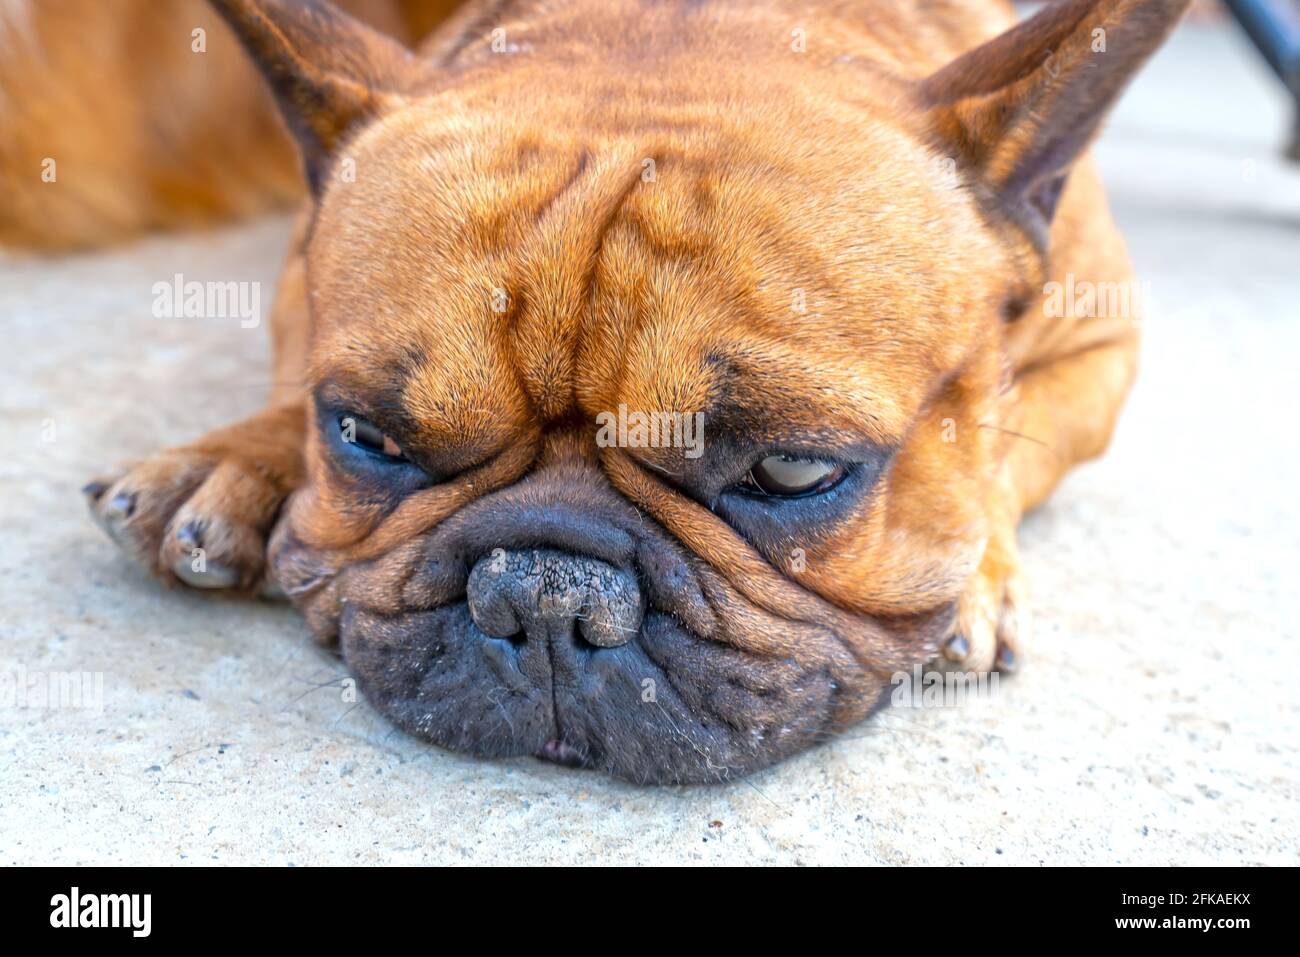 Bulldog-Porträt in domestiziertem Haustier. Sie haben ein schlaffes Gesicht und faltige Haut, sind aber sehr freundlich zu Menschen Stockfoto